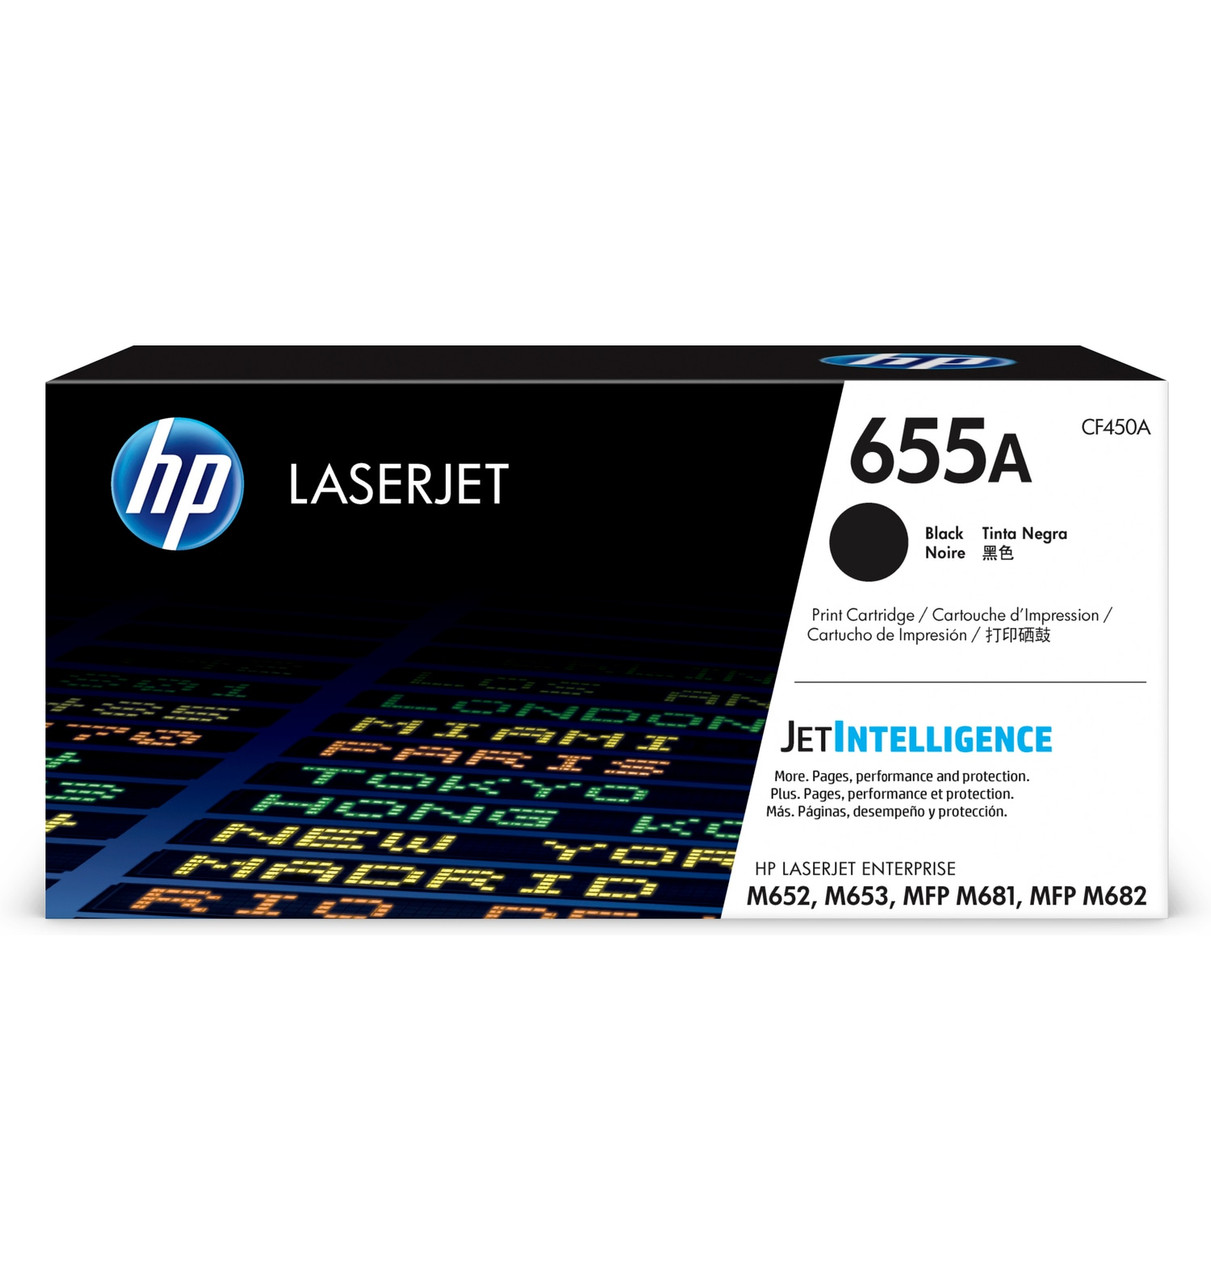 HP LaserJet Enterprise 655A Black Print Cartridge